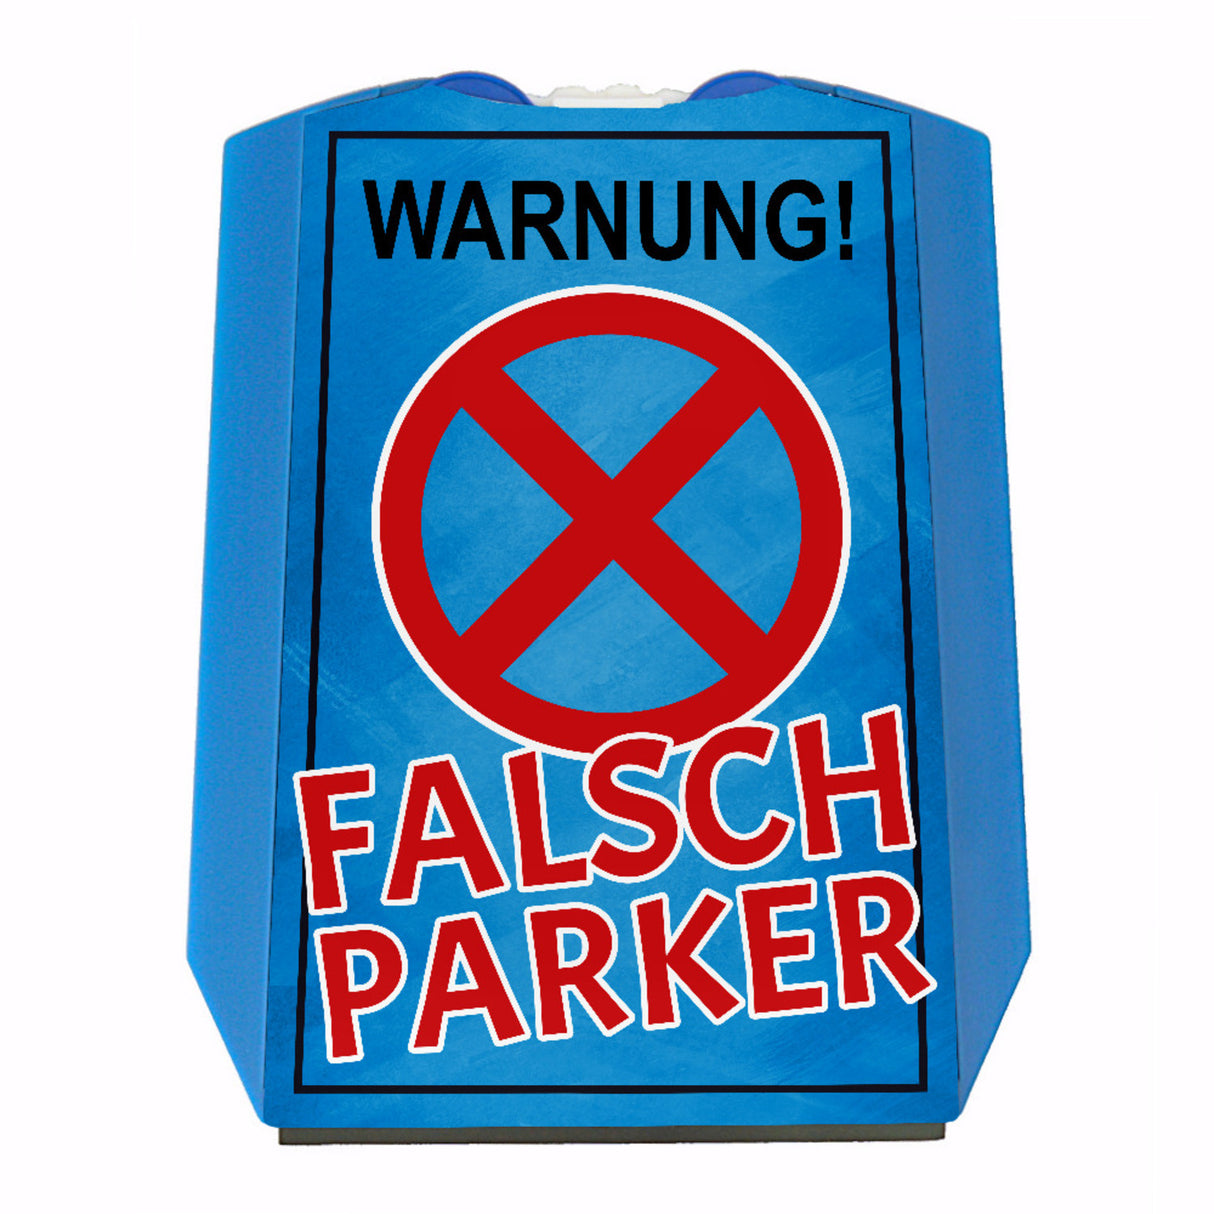 Warnung Falschparker Parkscheibe: Jetzt kaufen und Falschparker warnen! –